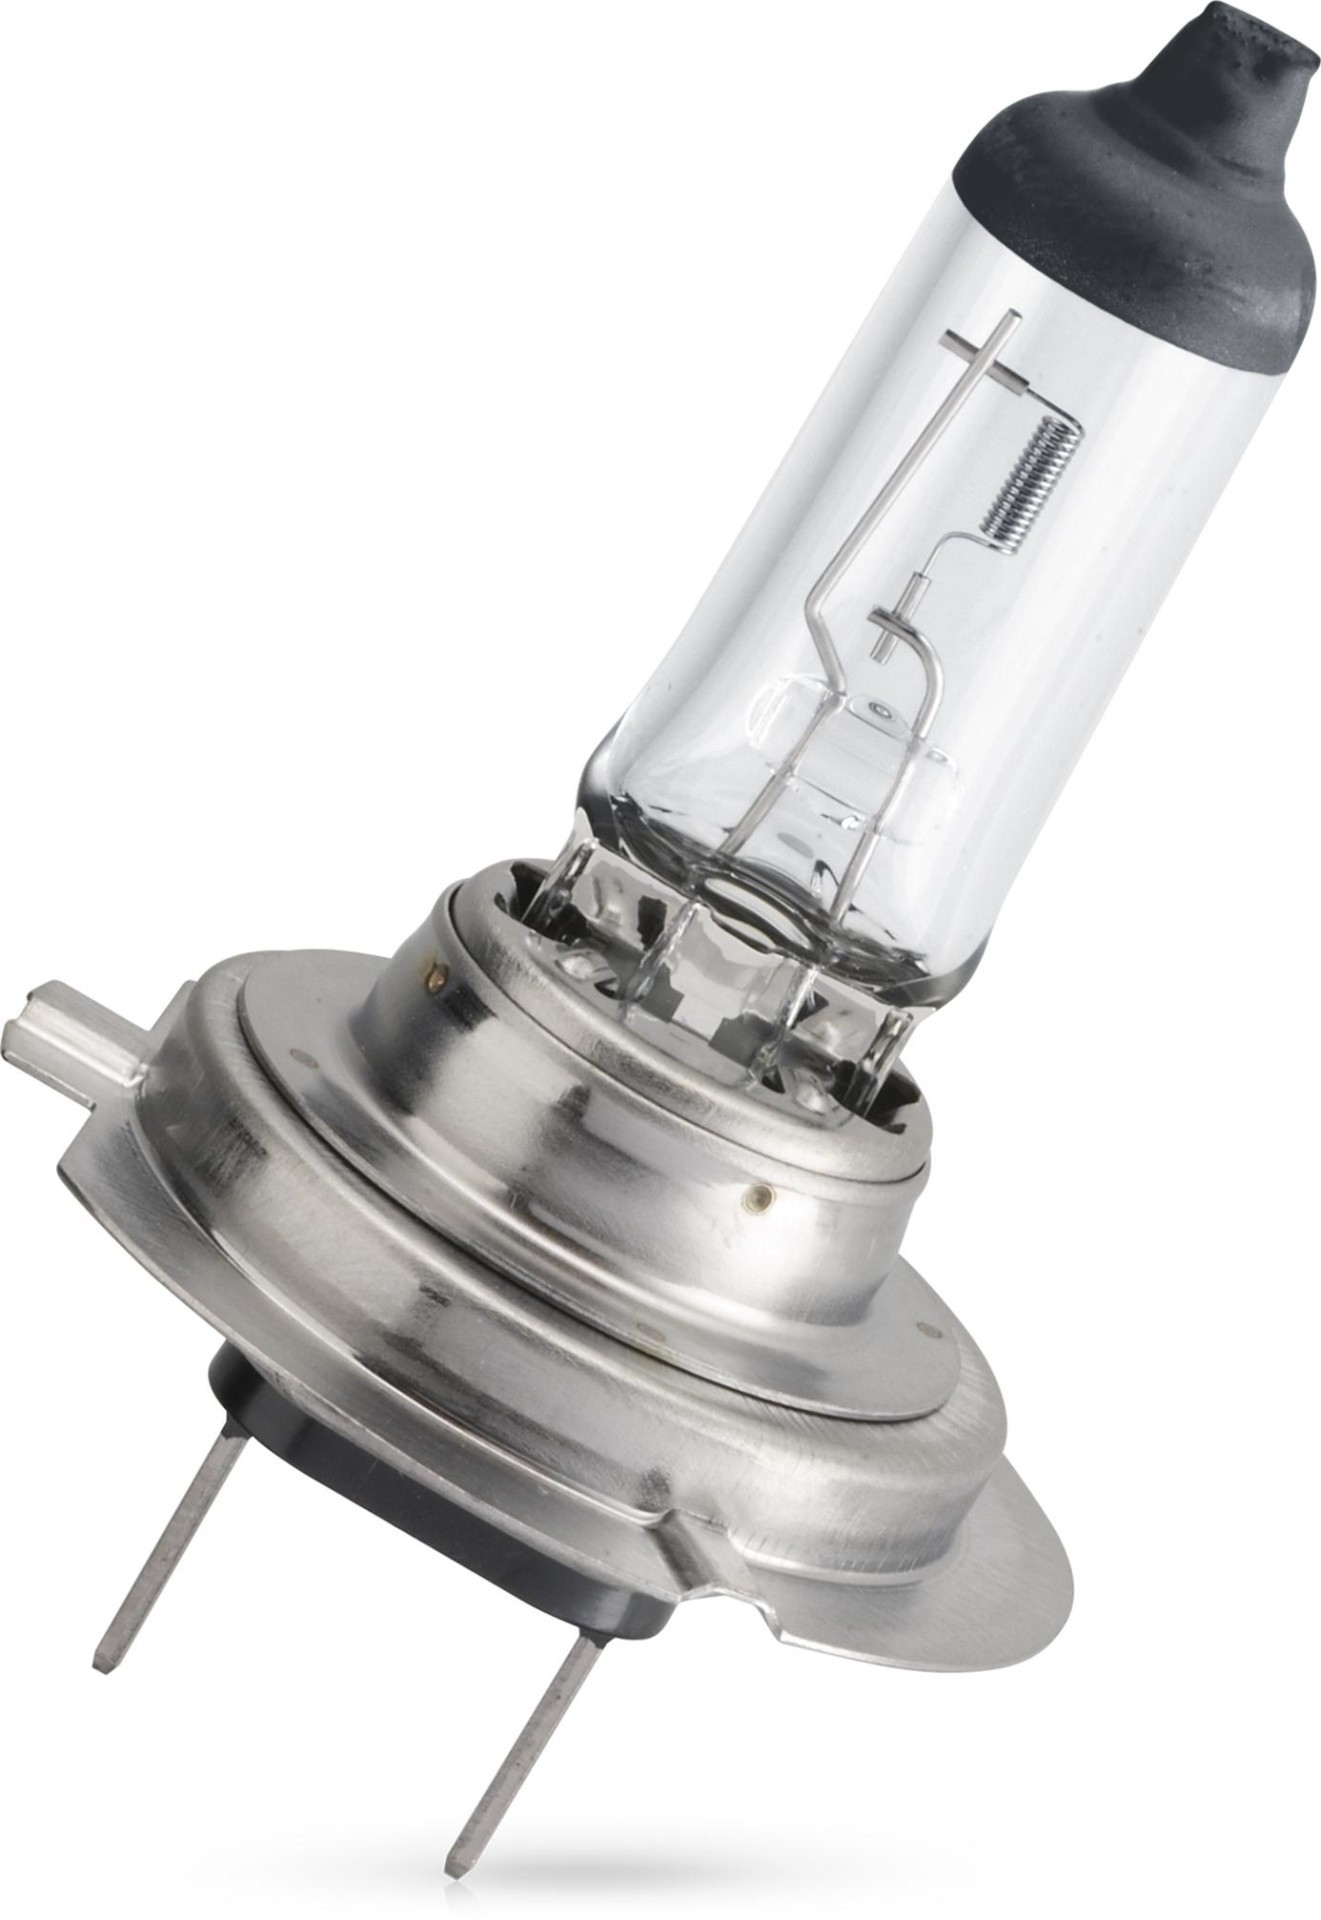 Auto-Lampen-Discount - H7 Lampen und mehr günstig kaufen - 10x OSRAM  Glühlampe H7 Original Line 12V 55W 64210